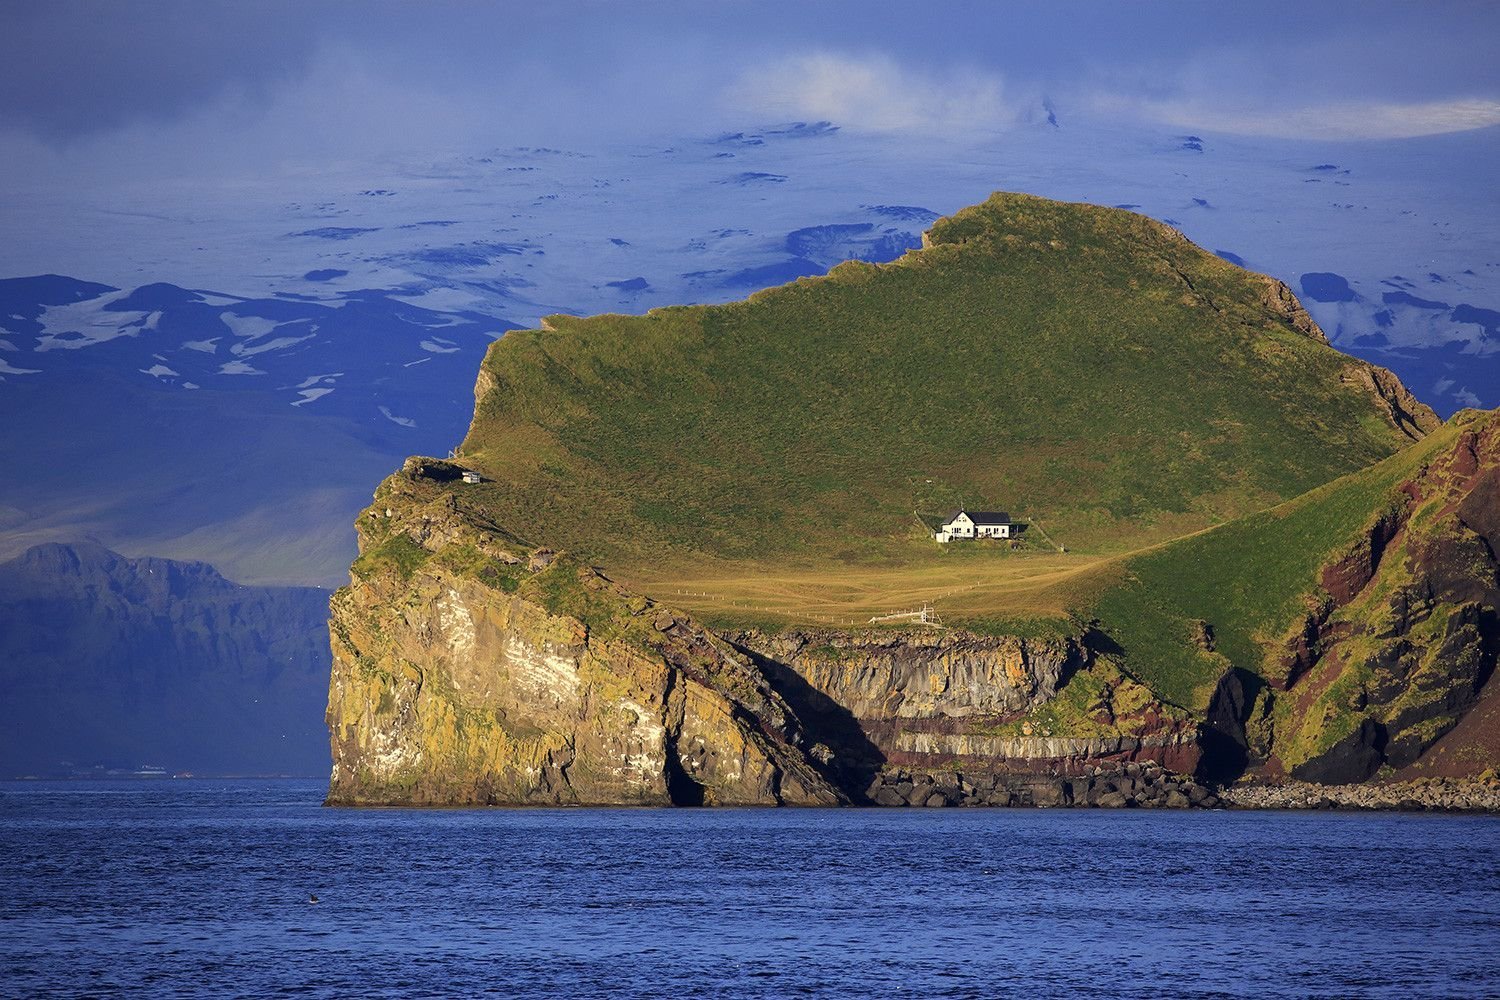 Island место. Остров Эллидаэй Исландия. Остров Эдлидаэй в Исландии. Одинокий дом на острове Эллидаэй Исландия. Остров Вестманнаэйяр Исландия.